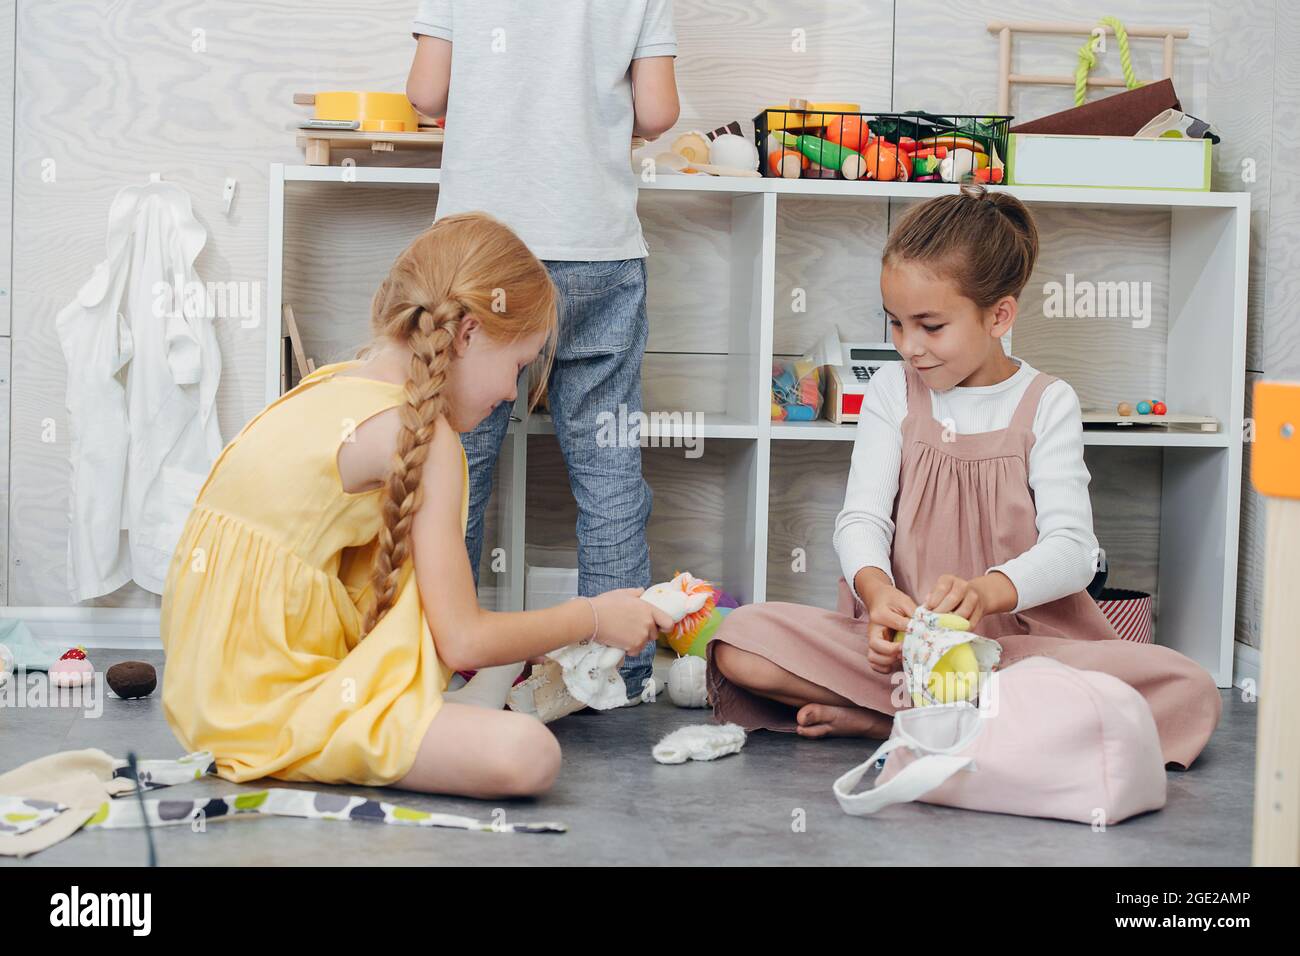 Fröhliche kleine Mädchen, die mit Puppen spielen und verschiedene Kleider  anziehen Stockfotografie - Alamy